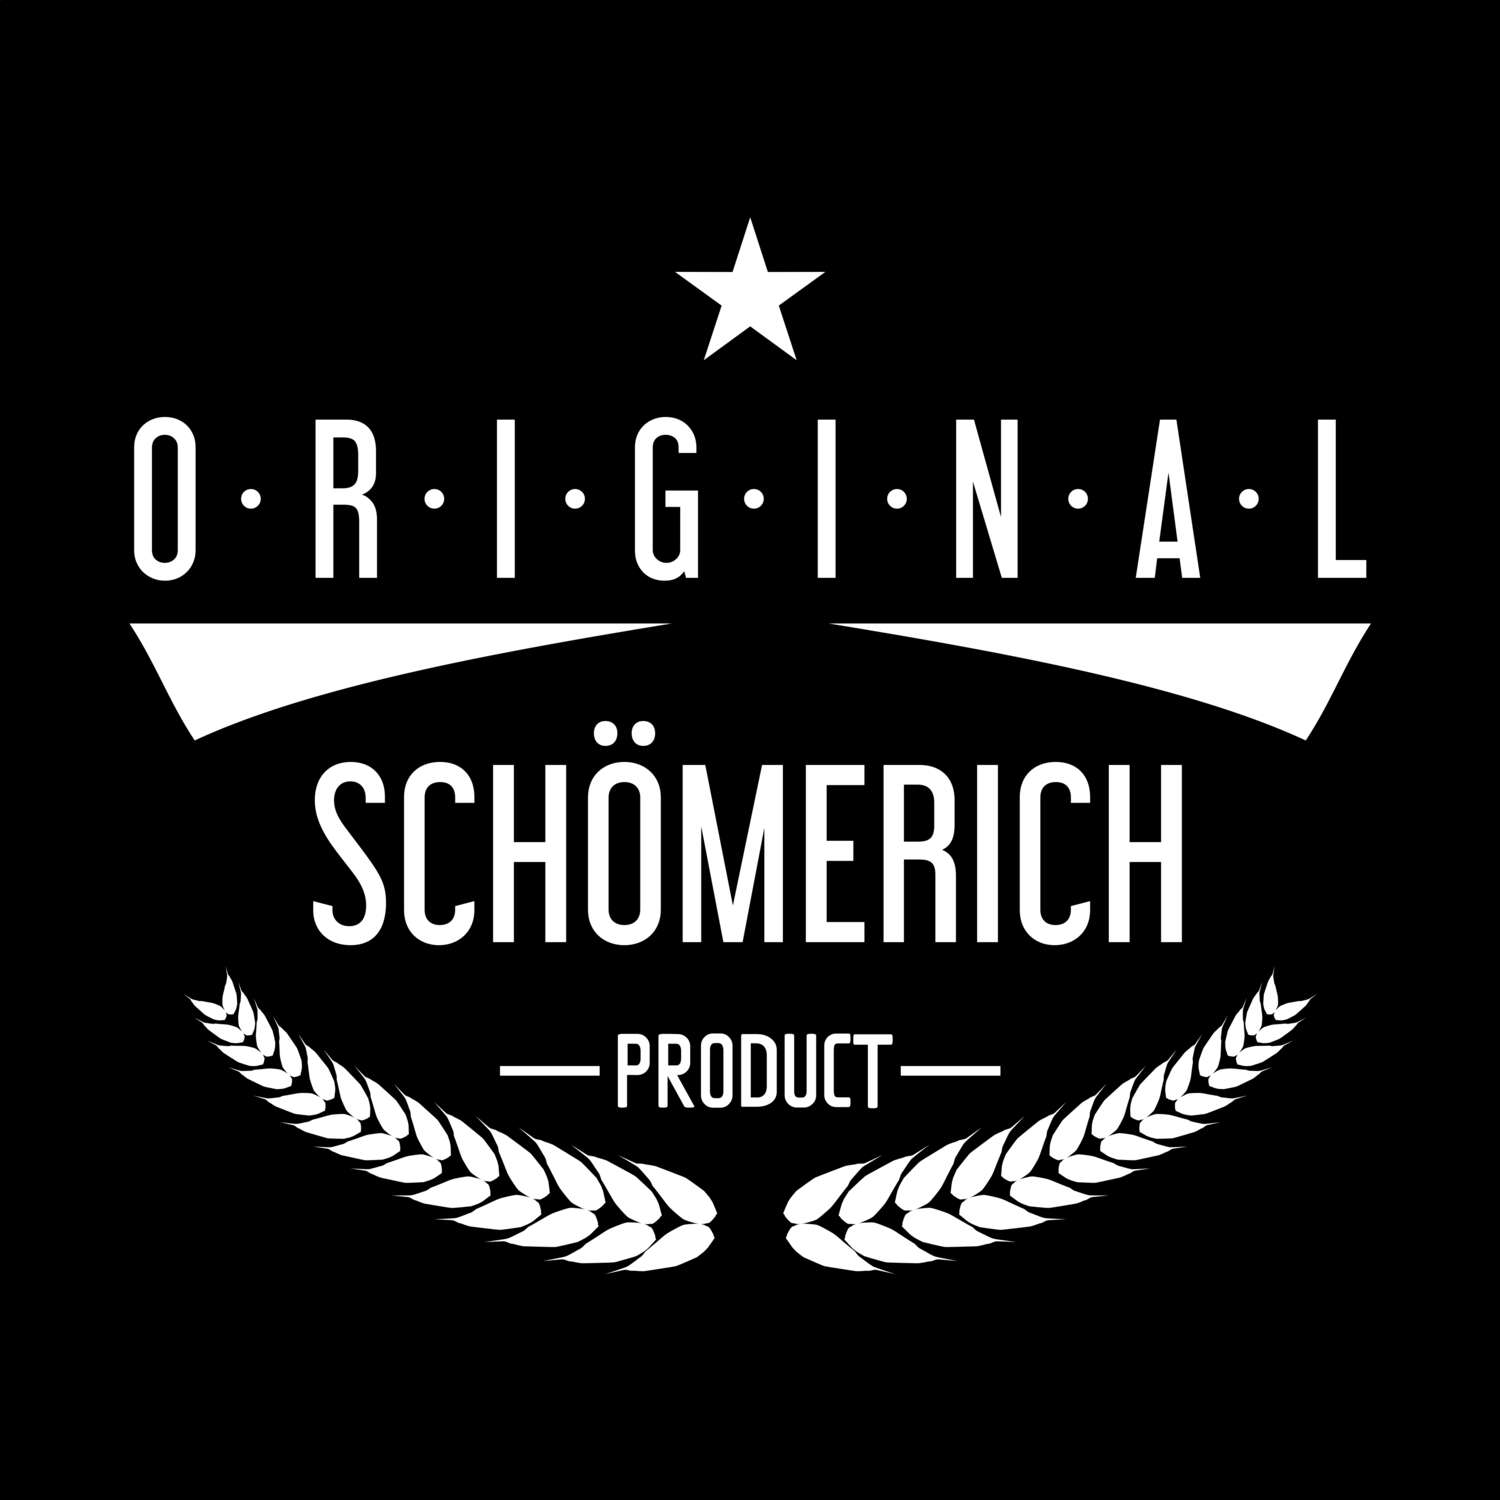 Schömerich T-Shirt »Original Product«